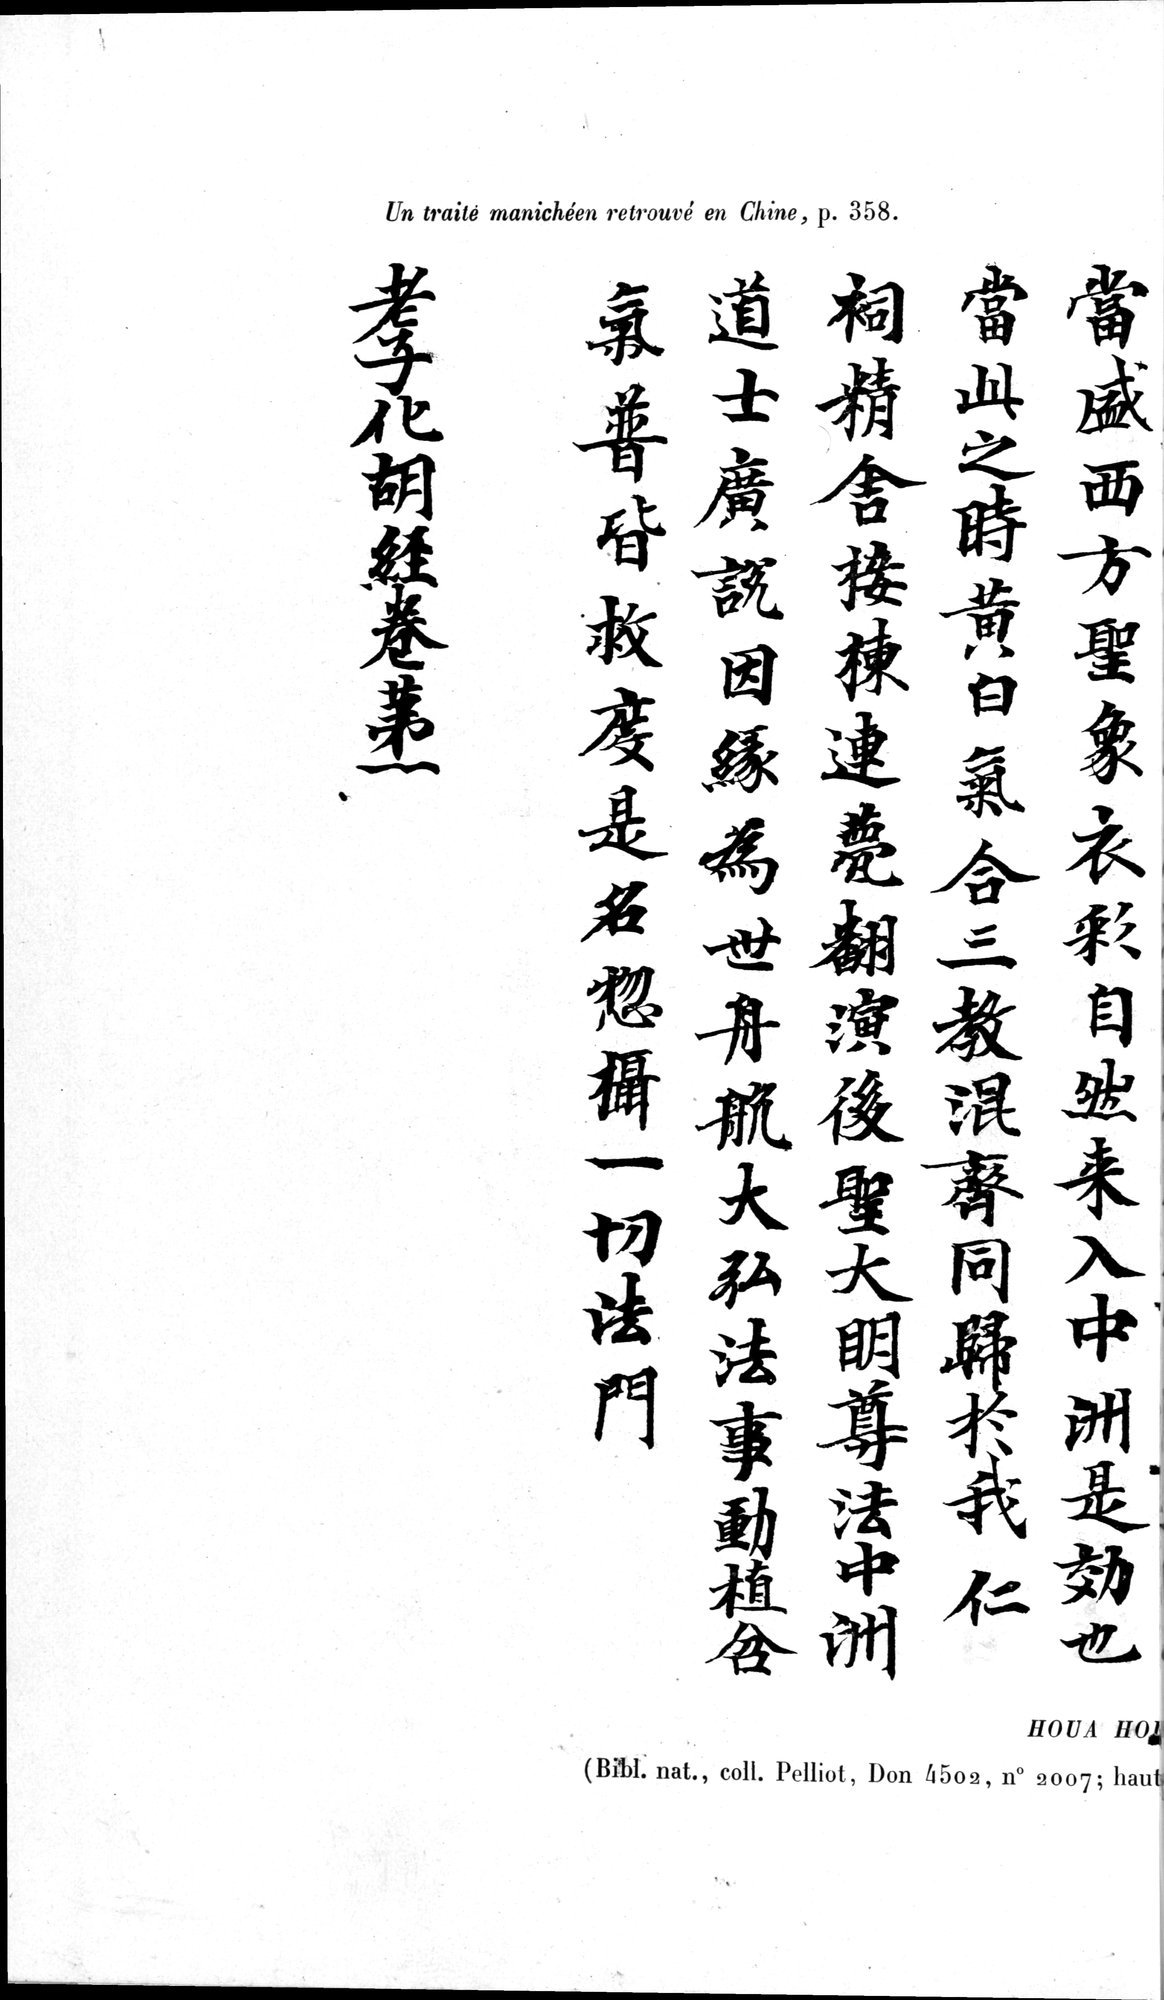 Un traité manichéen retrouvé en Chine : vol.1 / Page 372 (Grayscale High Resolution Image)